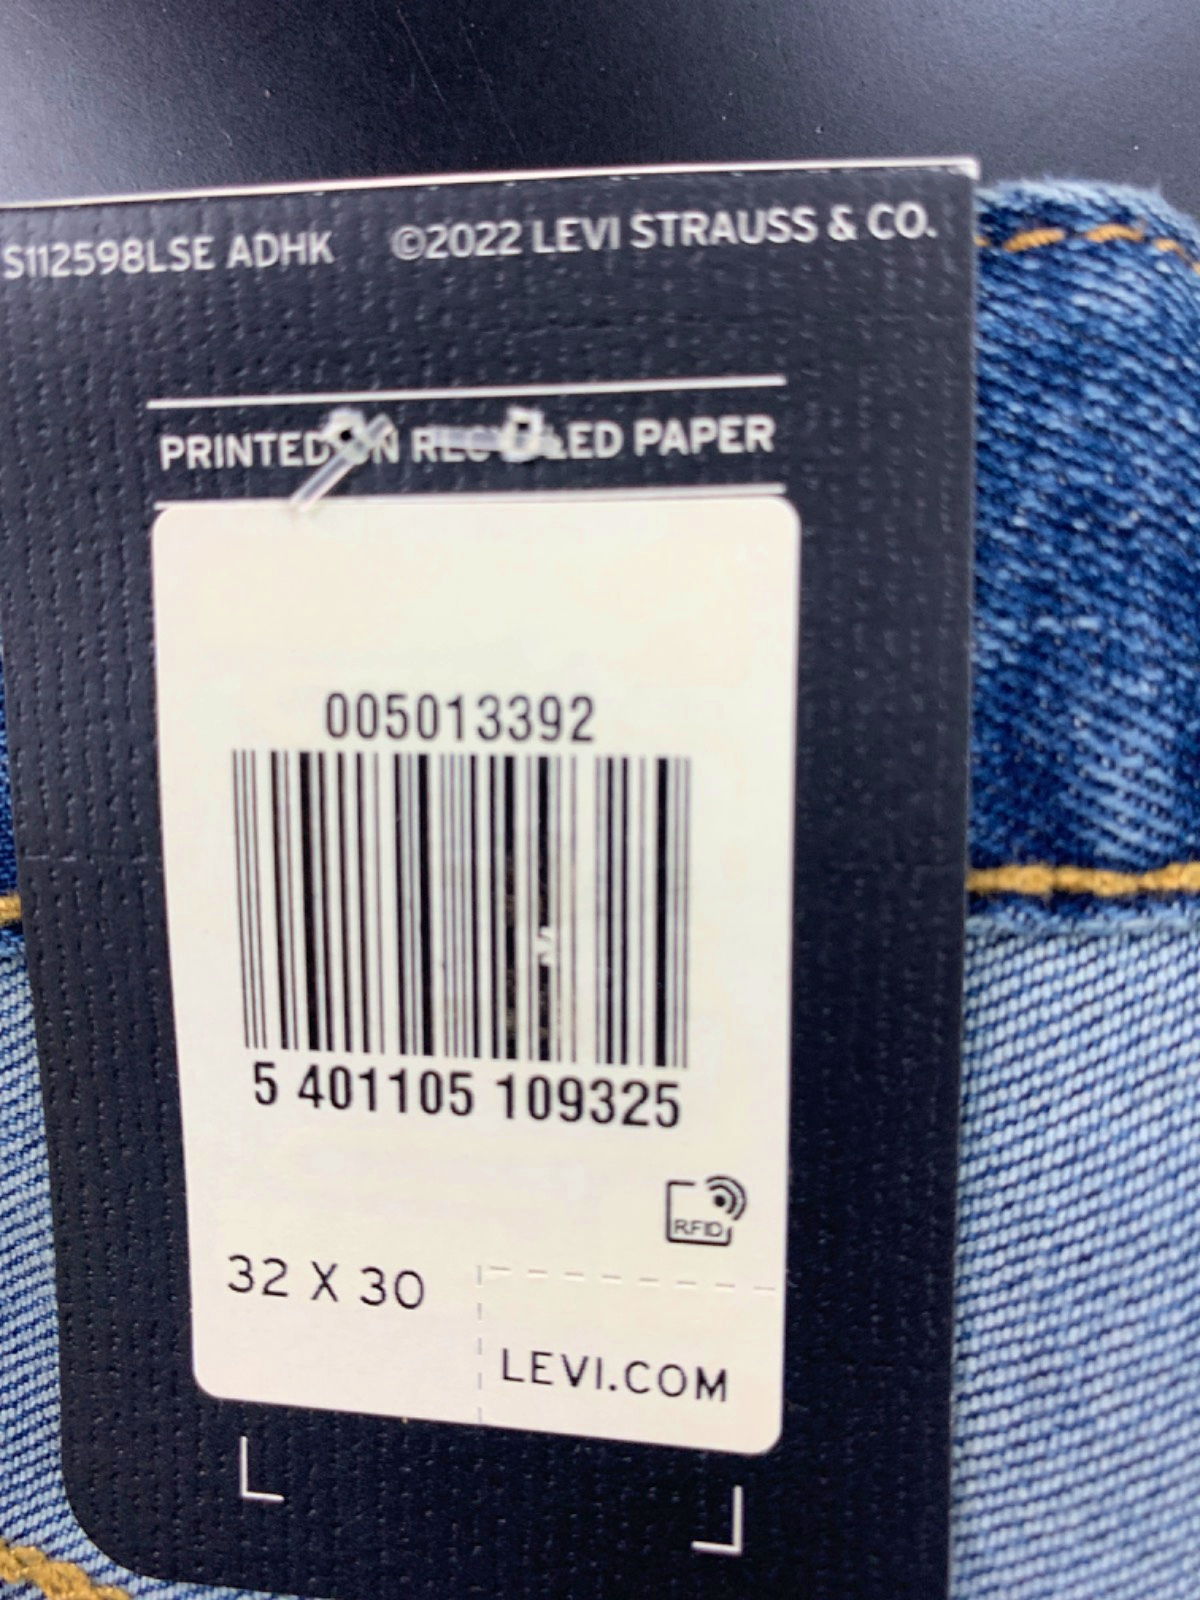 Levi's Blue 501 Original Stretch Jeans W 32 L 30